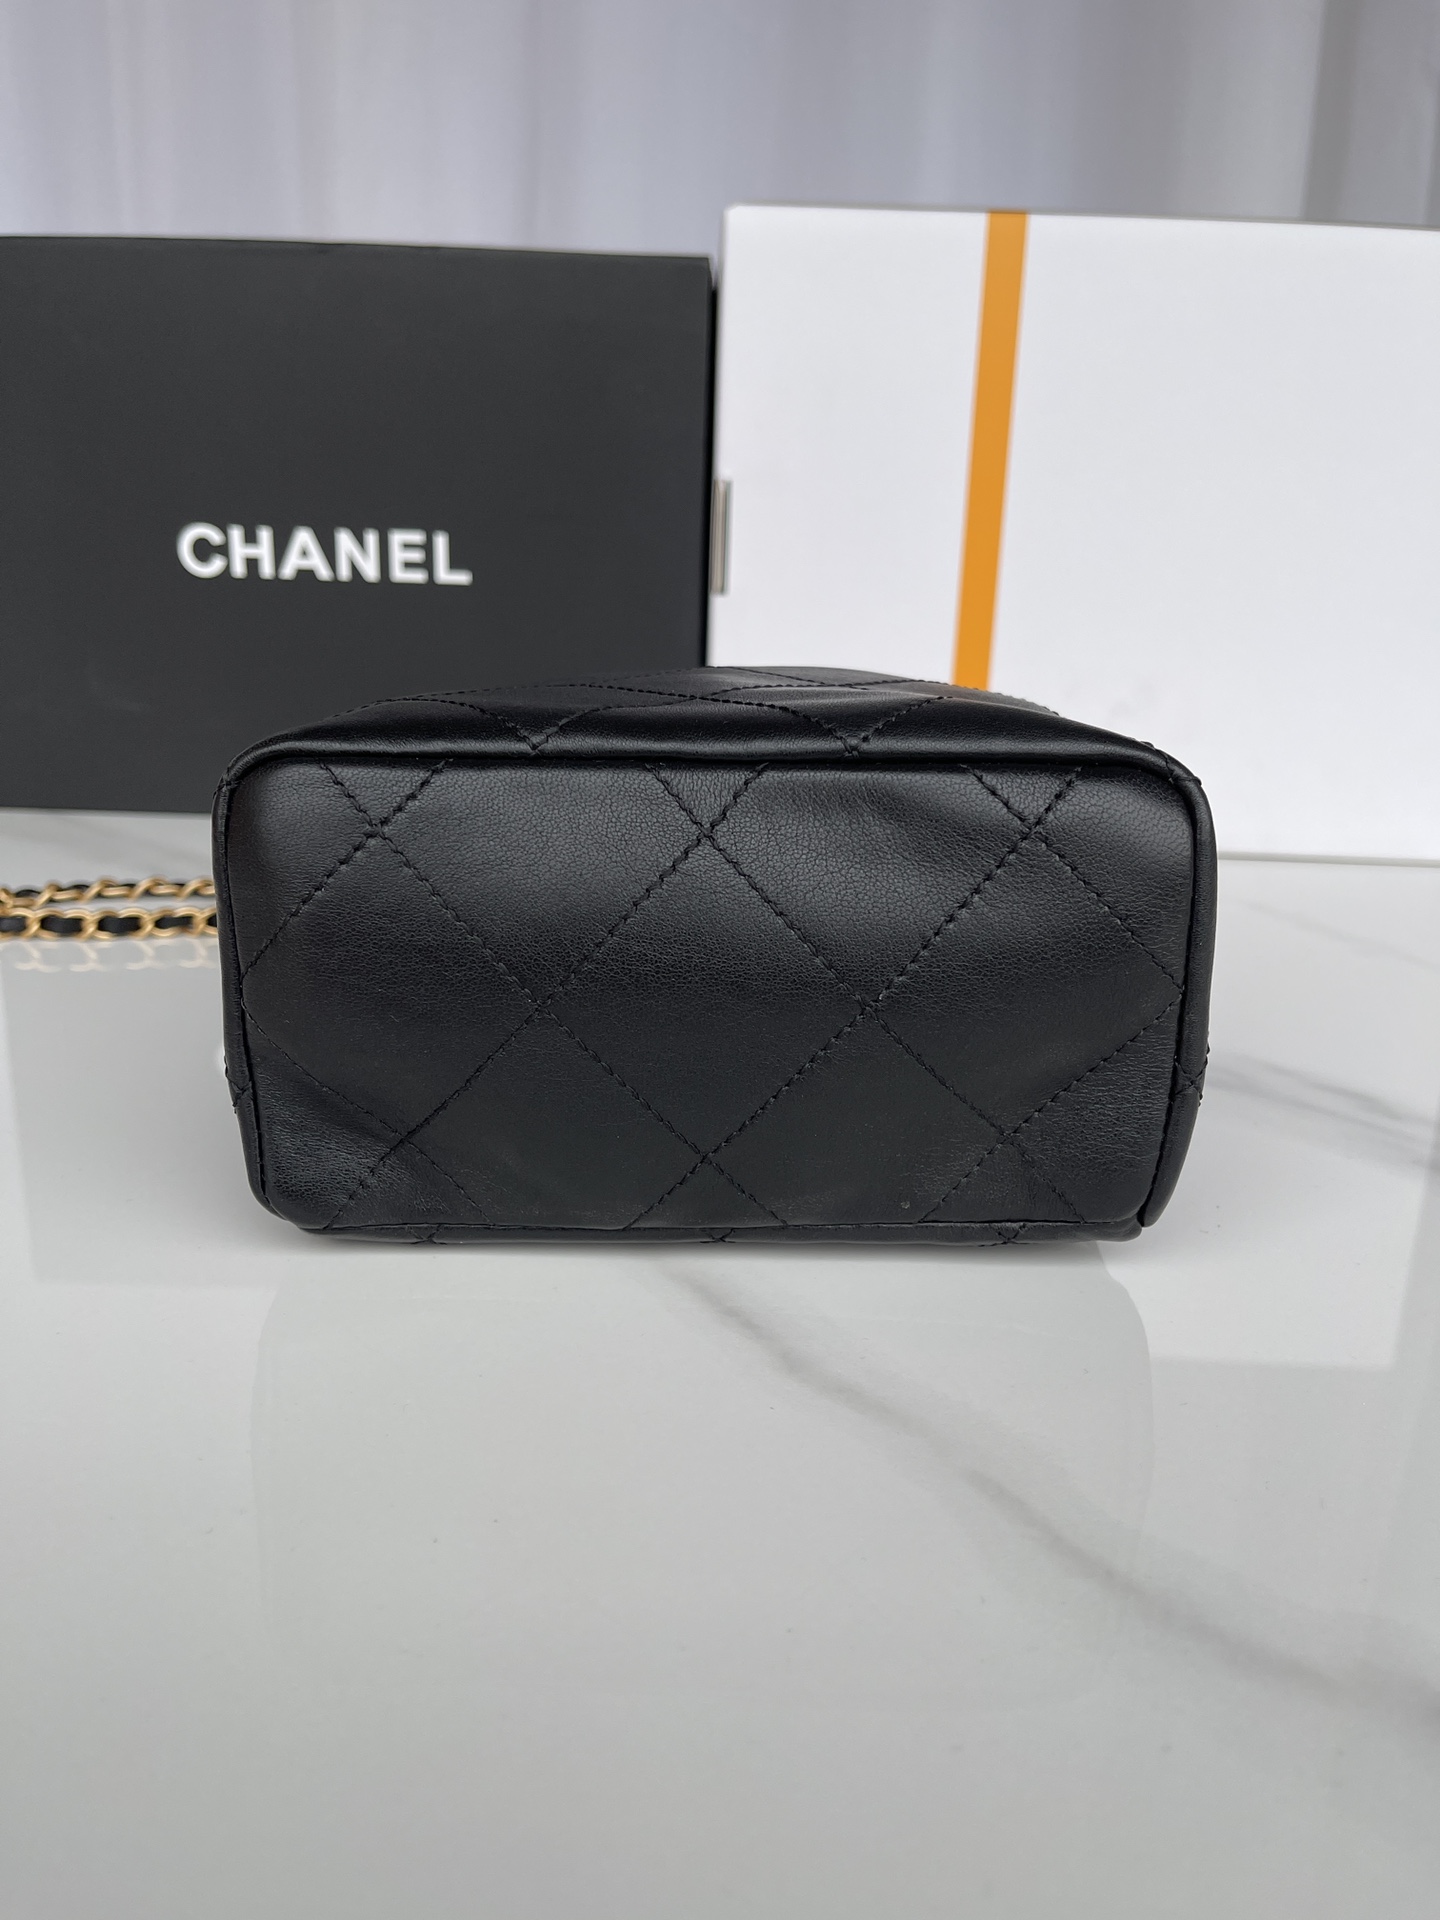 现货品牌:Chanel型号:AS3793简介:原单质量经典之作华丽与气质的前沿是你意想不到的尊贵皮种:原